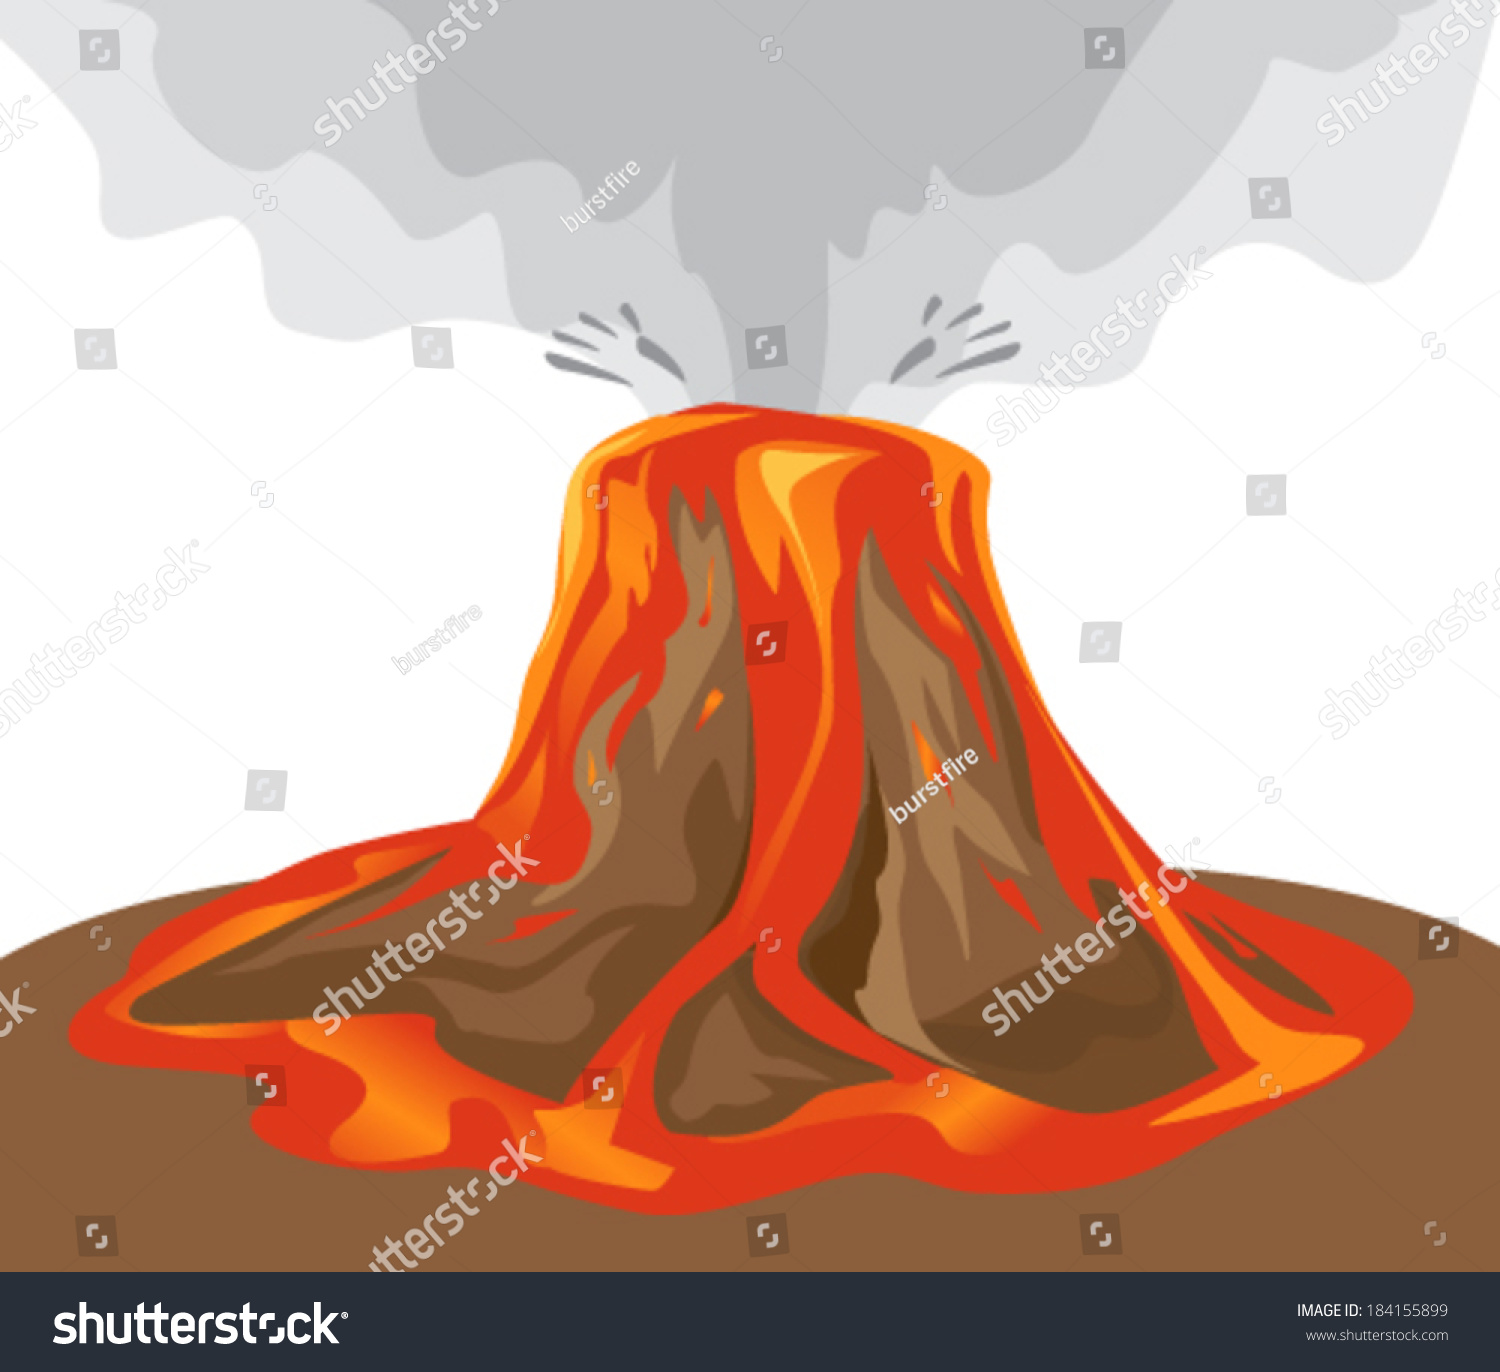 Vector Volcano Illustration Stock Vector 184155899 - Shutterstock